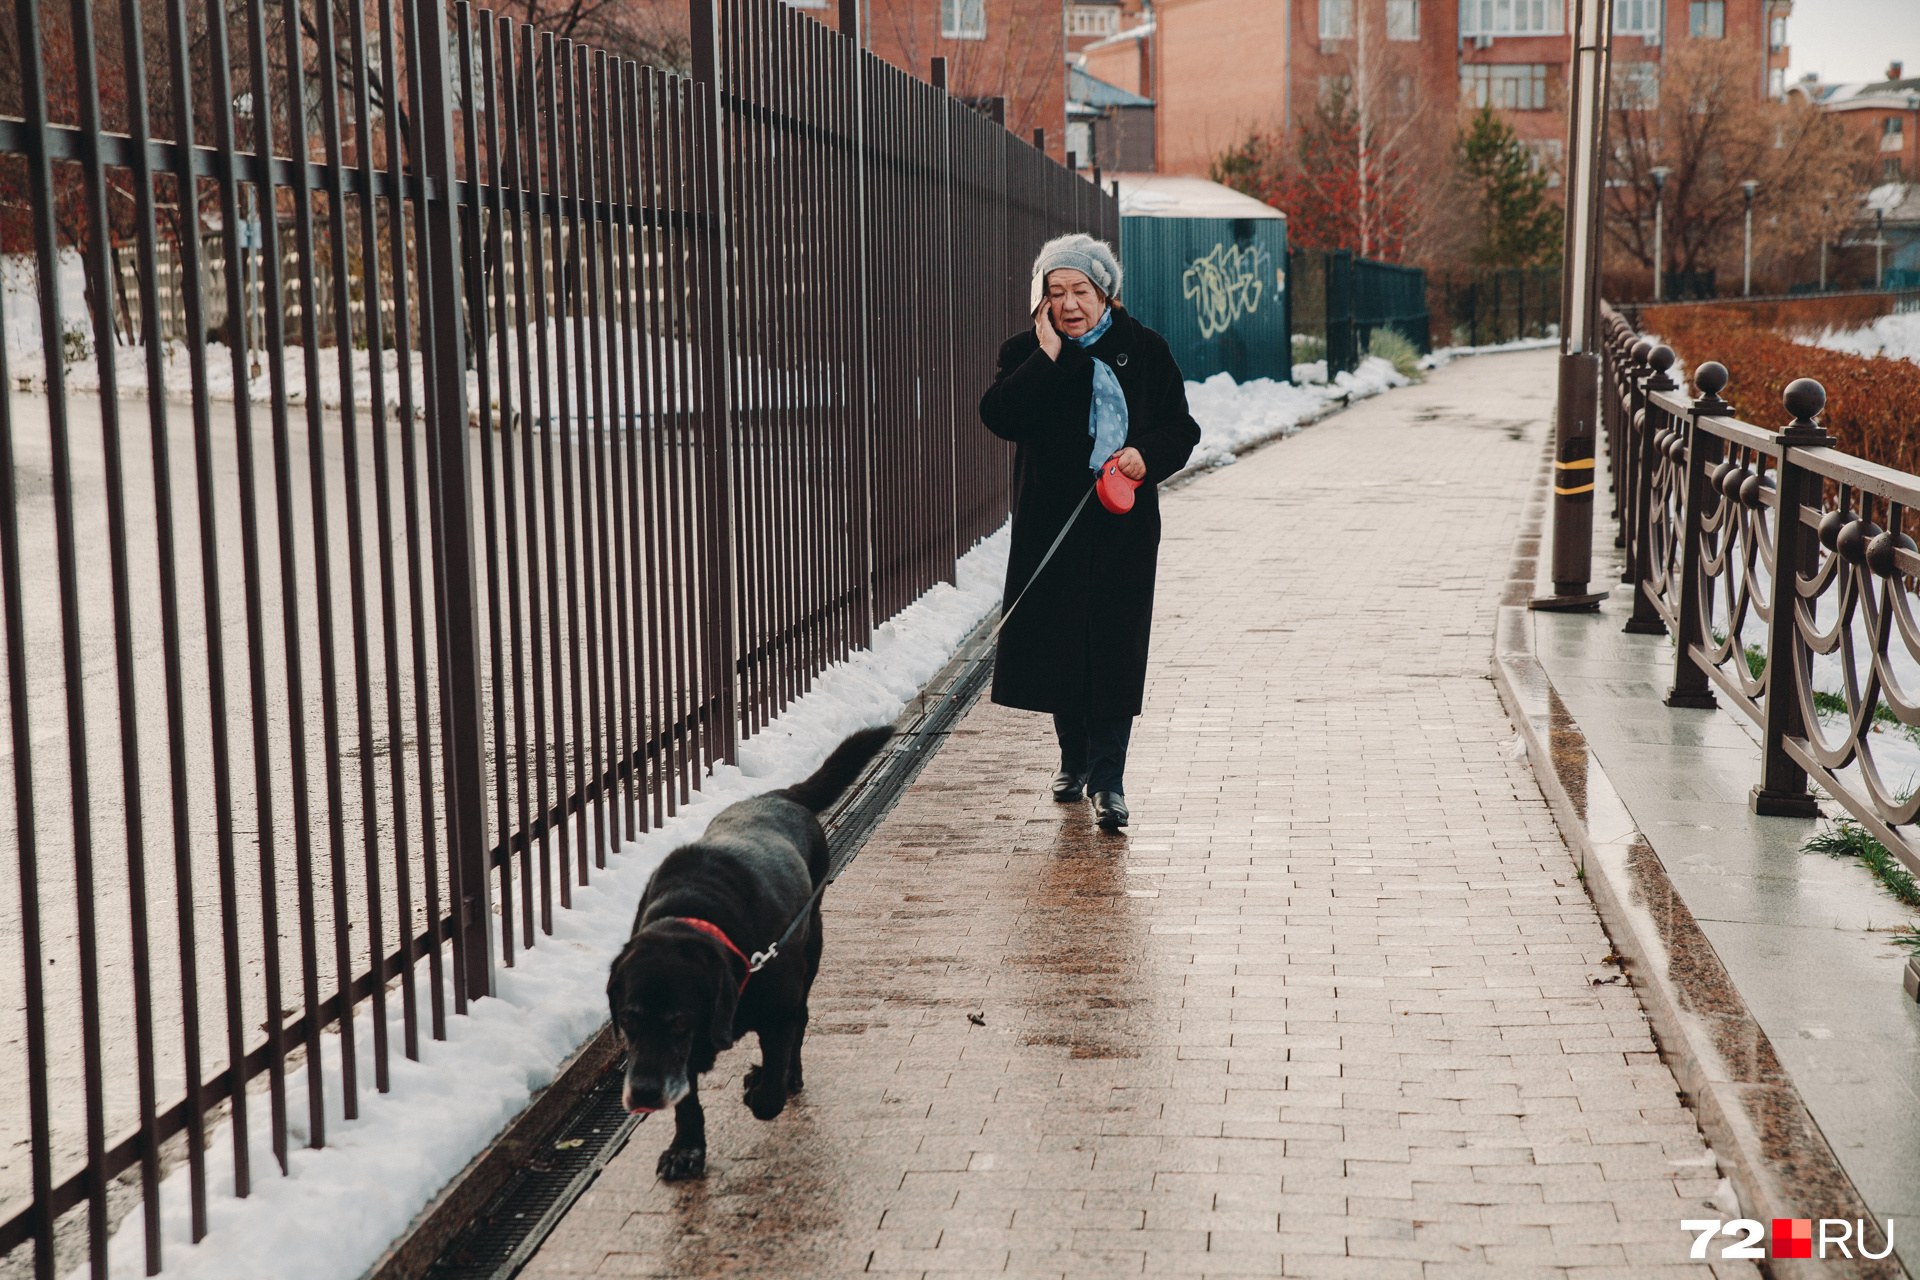 Несмотря на хорошую погоду, на набережной встретили только эту женщину, которая выгуливала свою собаку и весело что-то обсуждала по телефону